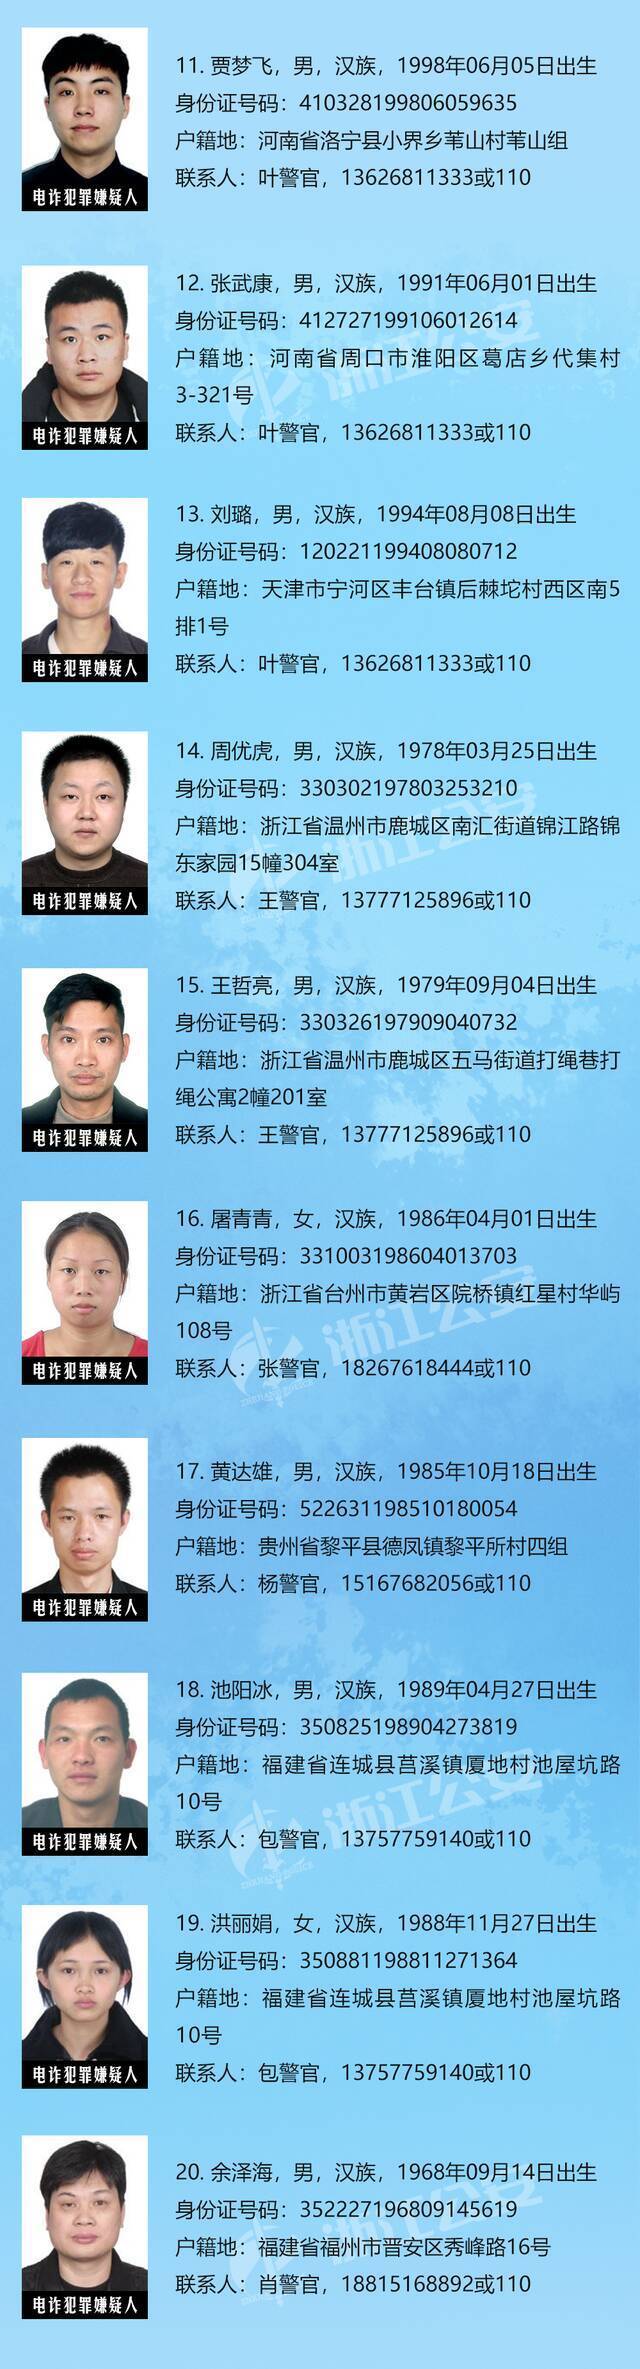 浙江省公安厅公开通缉50名在逃人员